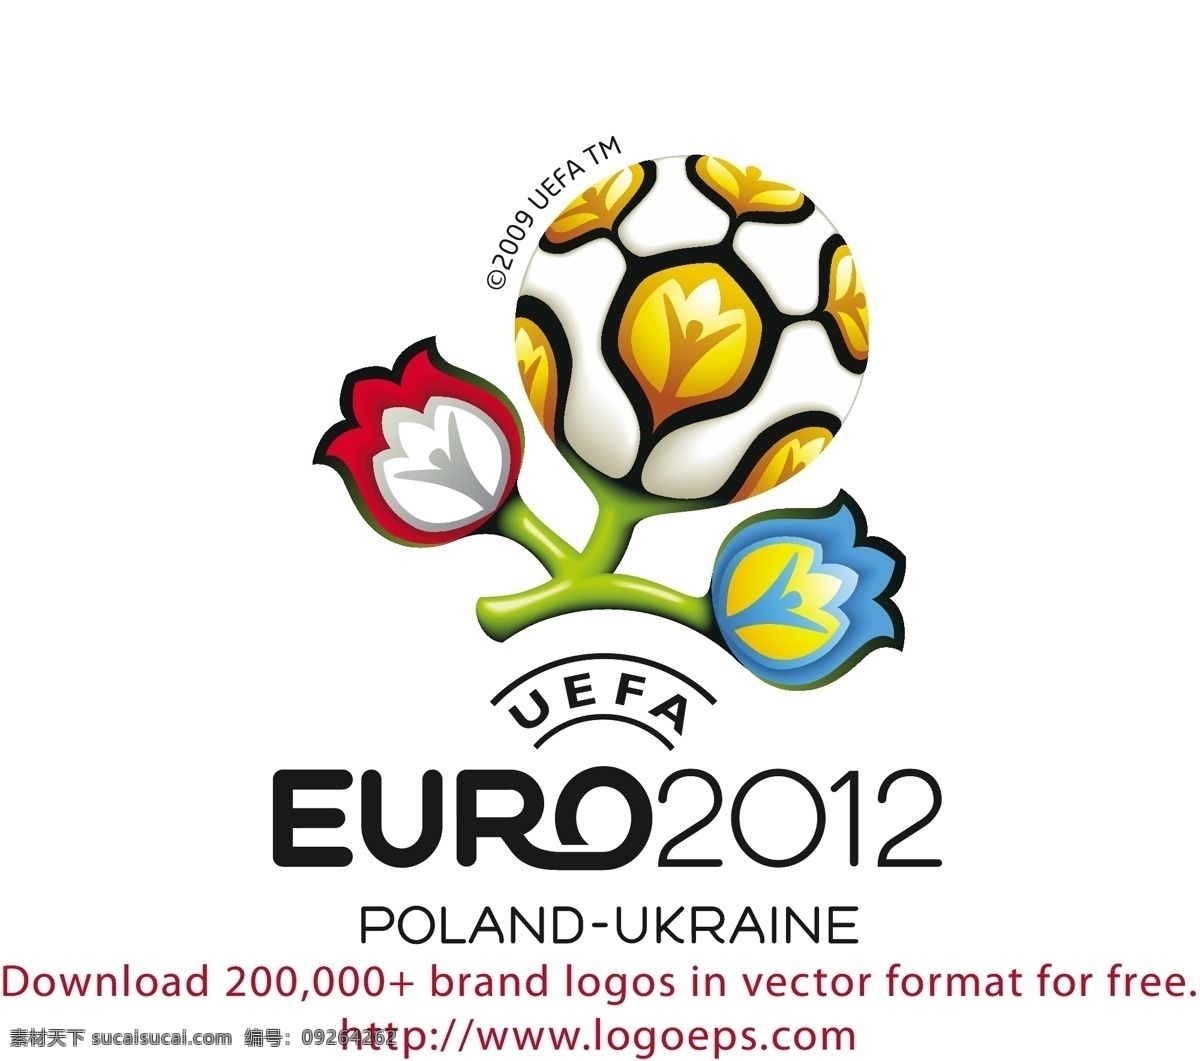 2012 欧洲杯 足球赛 标志 杯 标志图形 欧洲 杯杯标志 欧洲矢量标志 矢量 国际足联 世界杯 标志设计 国际足联杯 联盟杯 向量 矢量图 建筑家居